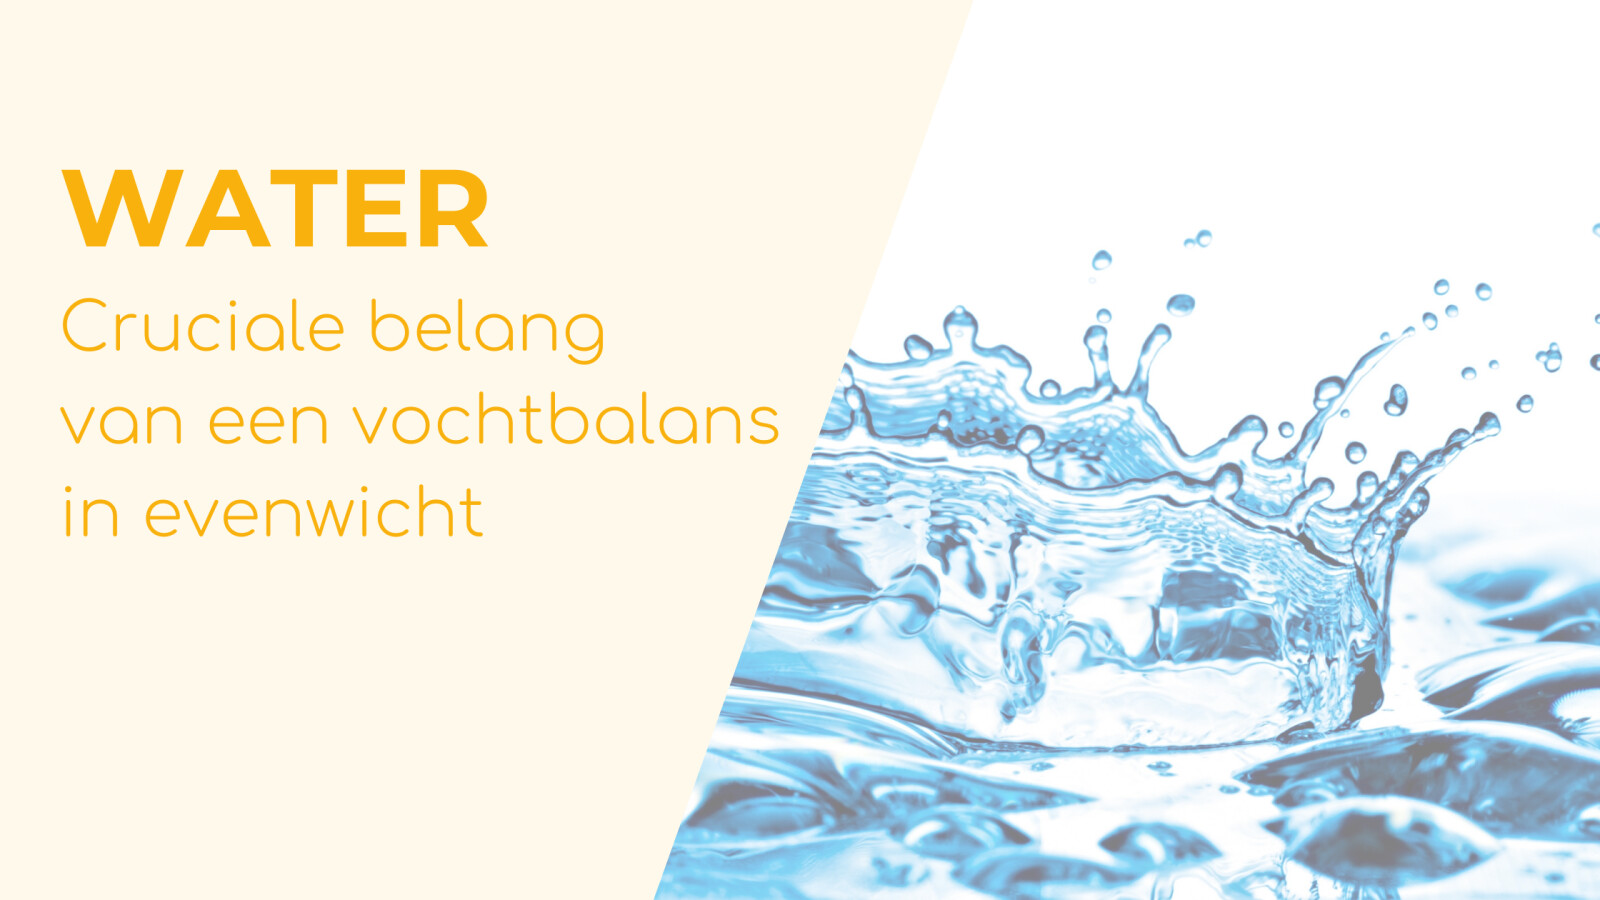 Water – het cruciale belang van een vochtbalans in evenwicht